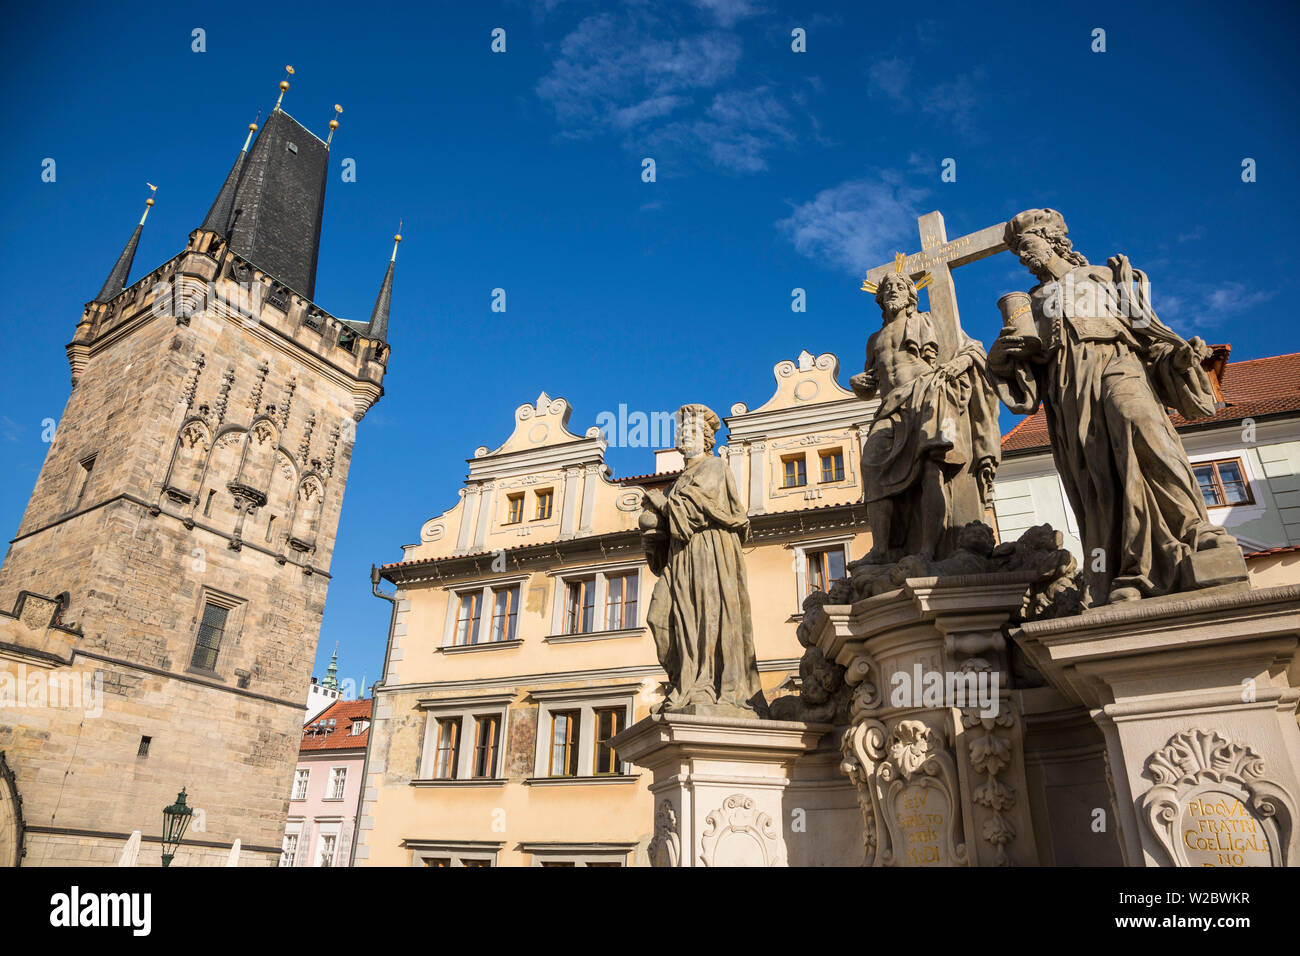 Le Pont Charles (Karluv Most) et Mala Strana (Petit quartier), Prague, République Tchèque Banque D'Images